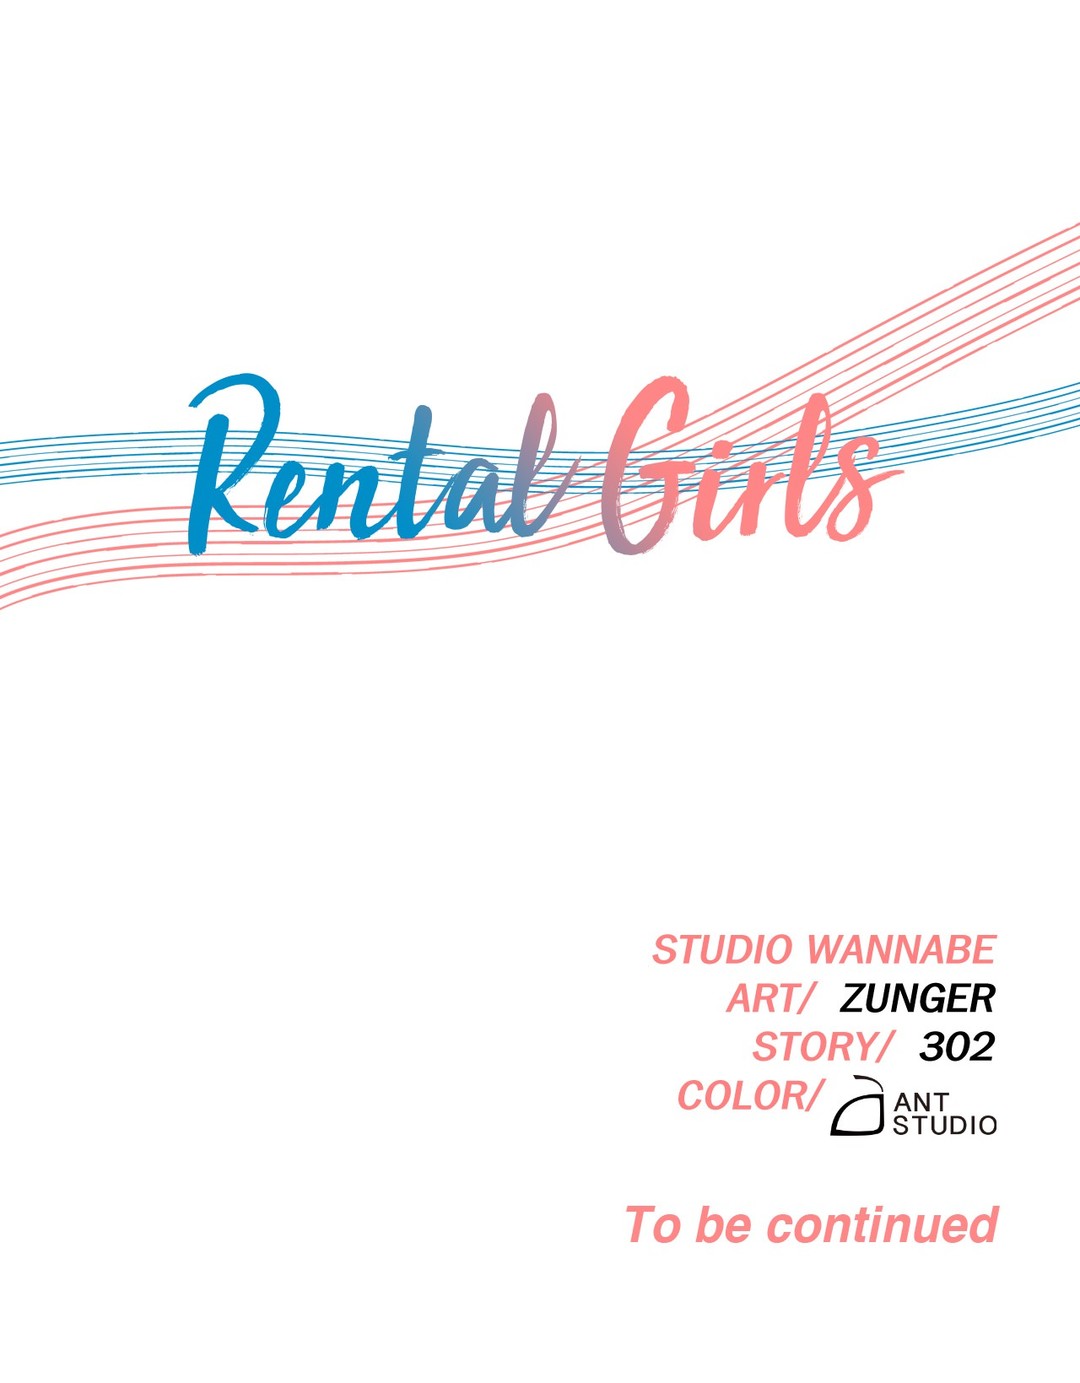 Rental Girls image